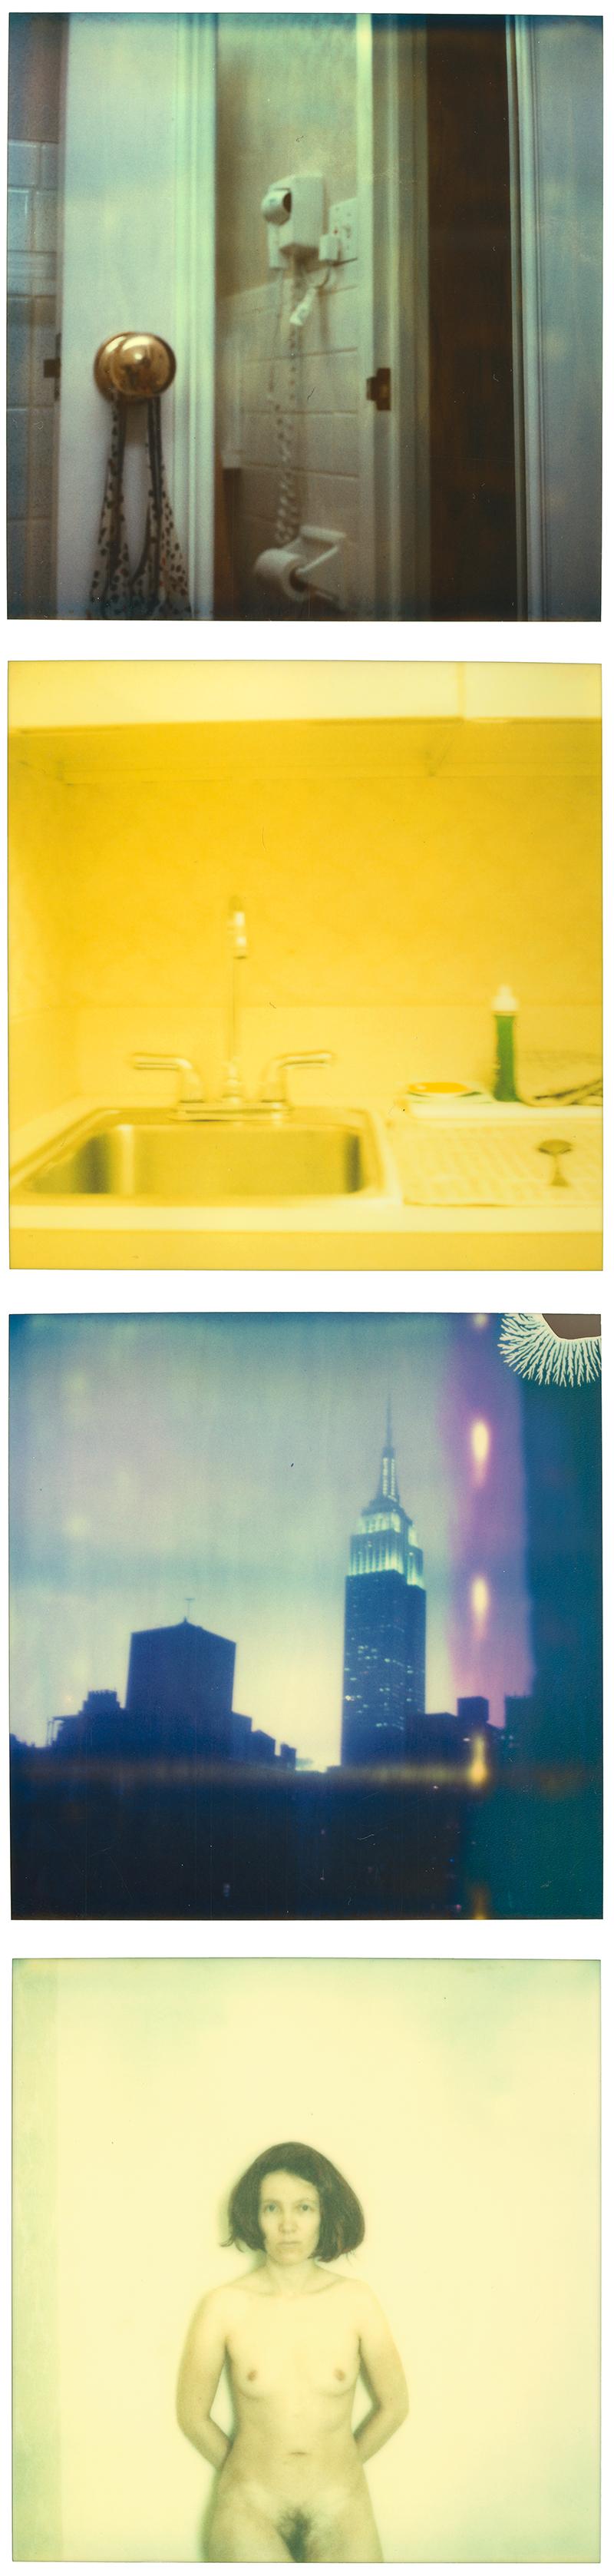 Stefanie Schneider Color Photograph - Shelbourne Hotel - Strange Love, 4 pieces, 100x100cm each